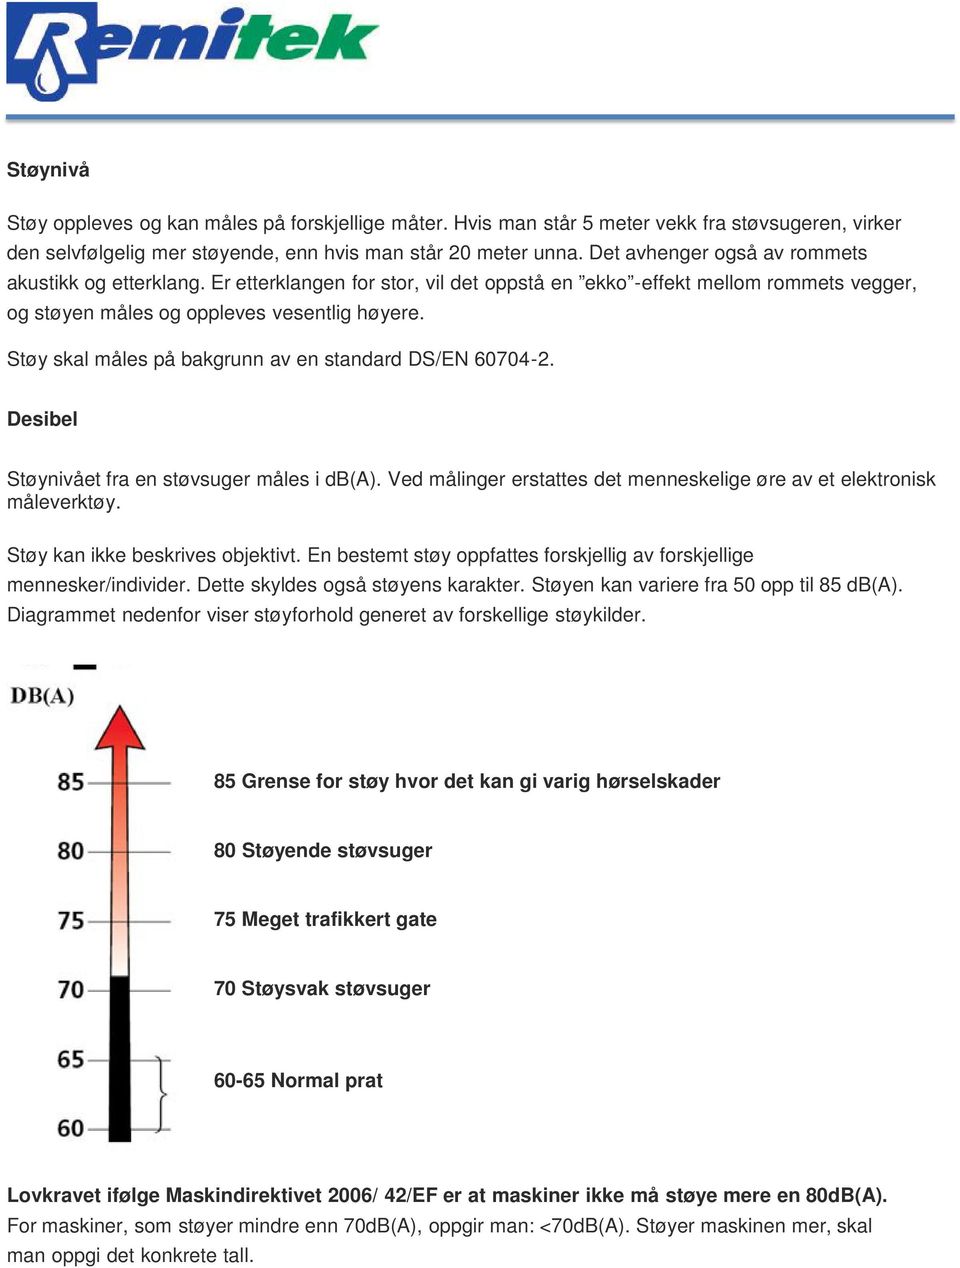 Støy skal måles på bakgrunn av en standard DS/EN 60704-2. Desibel Støynivået fra en støvsuger måles i db(a). Ved målinger erstattes det menneskelige øre av et elektronisk måleverktøy.